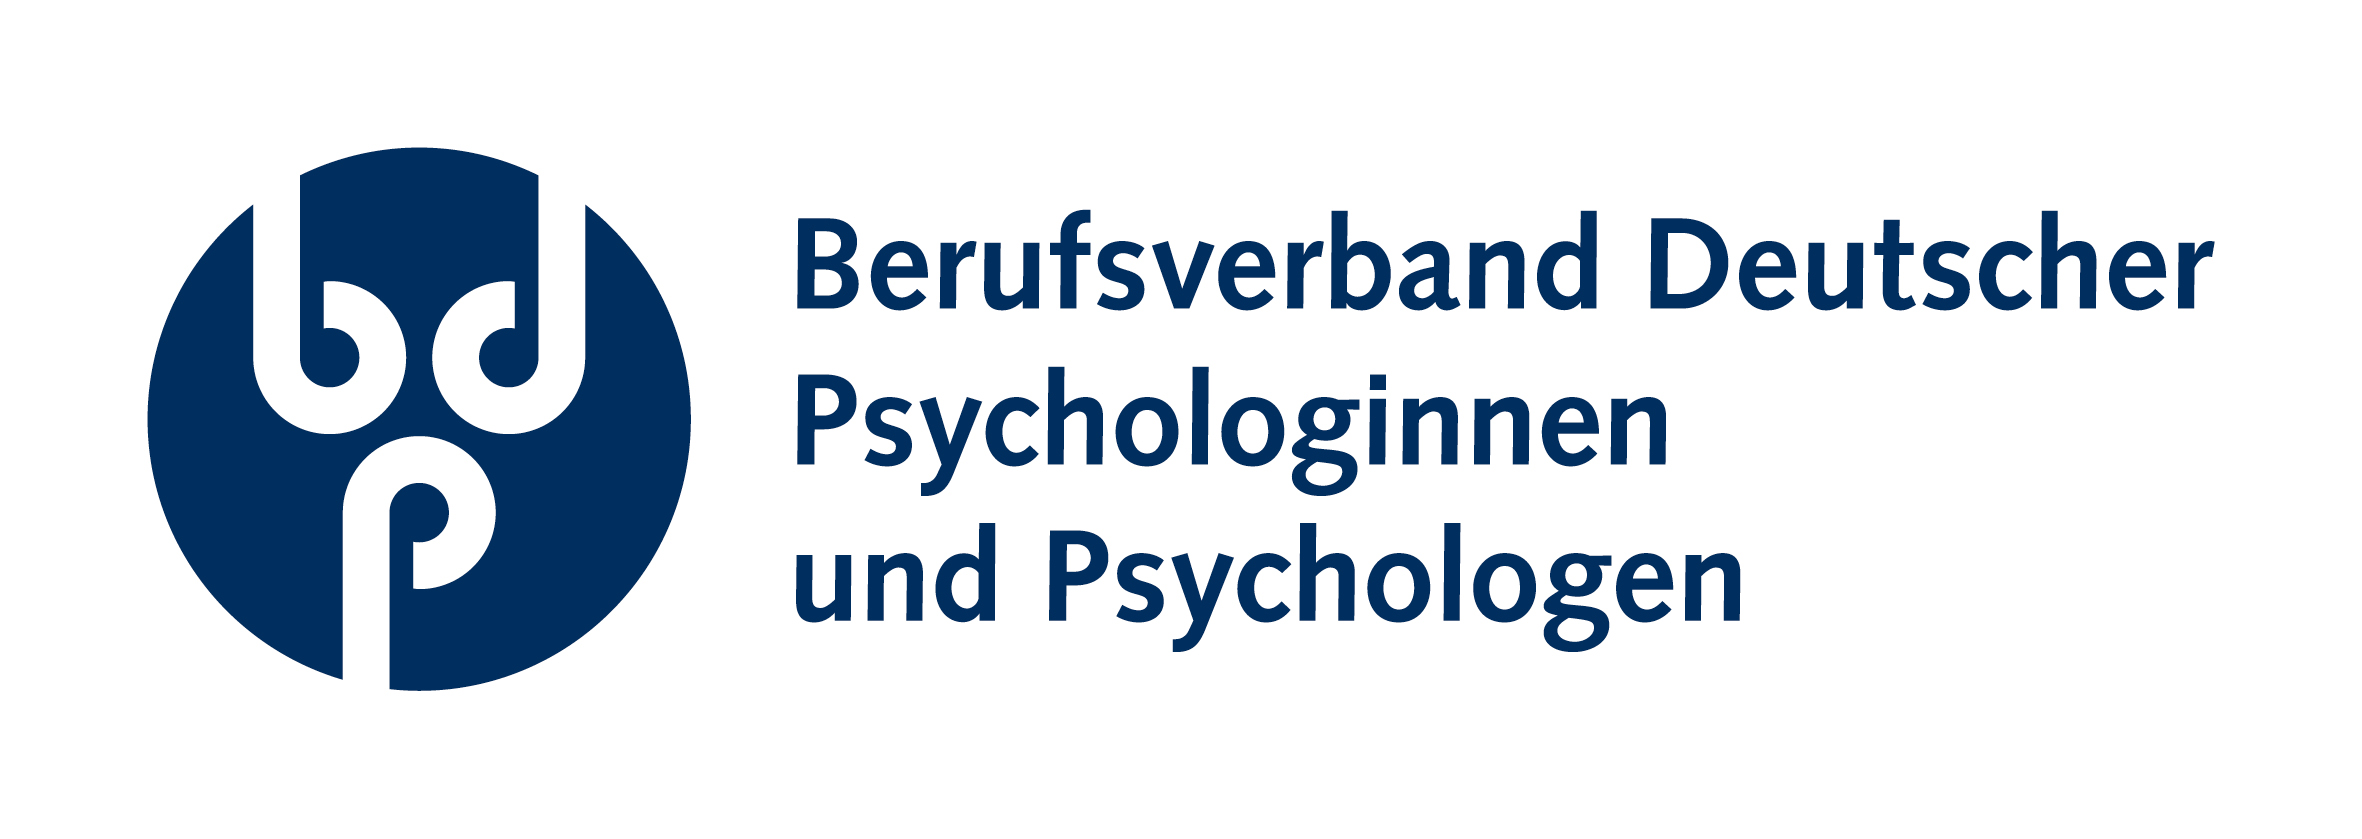 Berufsverband Deutscher Psychologinnen